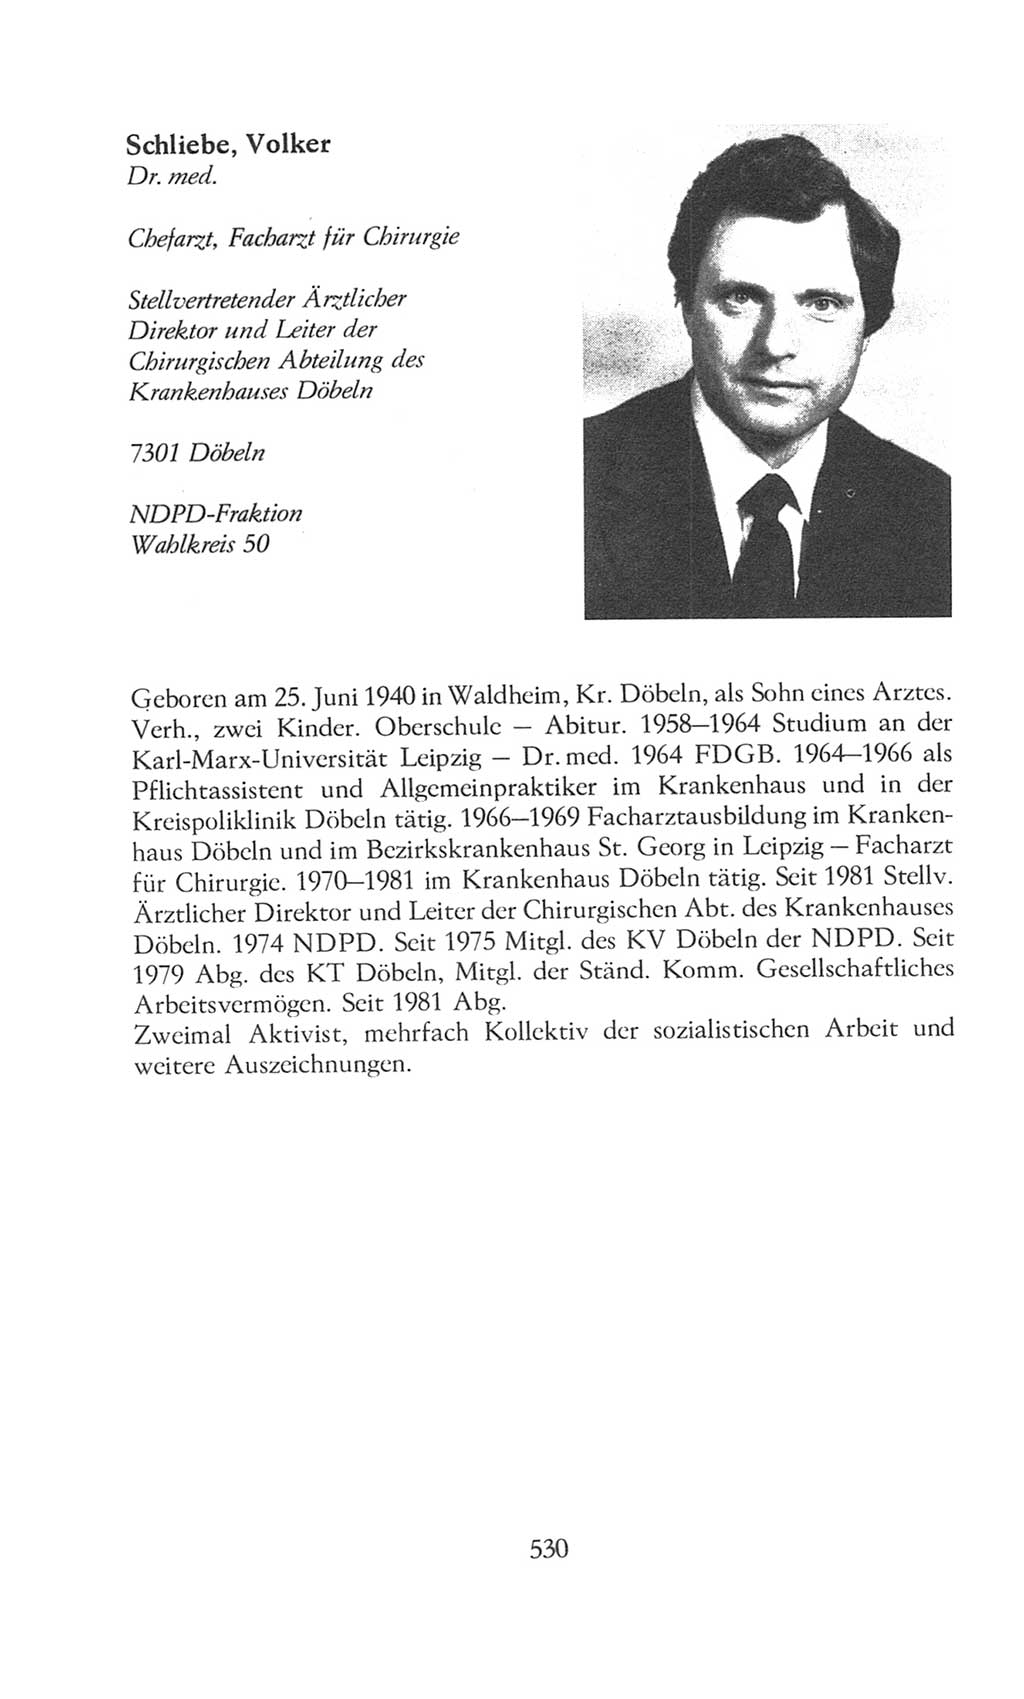 Volkskammer (VK) der Deutschen Demokratischen Republik (DDR), 8. Wahlperiode 1981-1986, Seite 530 (VK. DDR 8. WP. 1981-1986, S. 530)